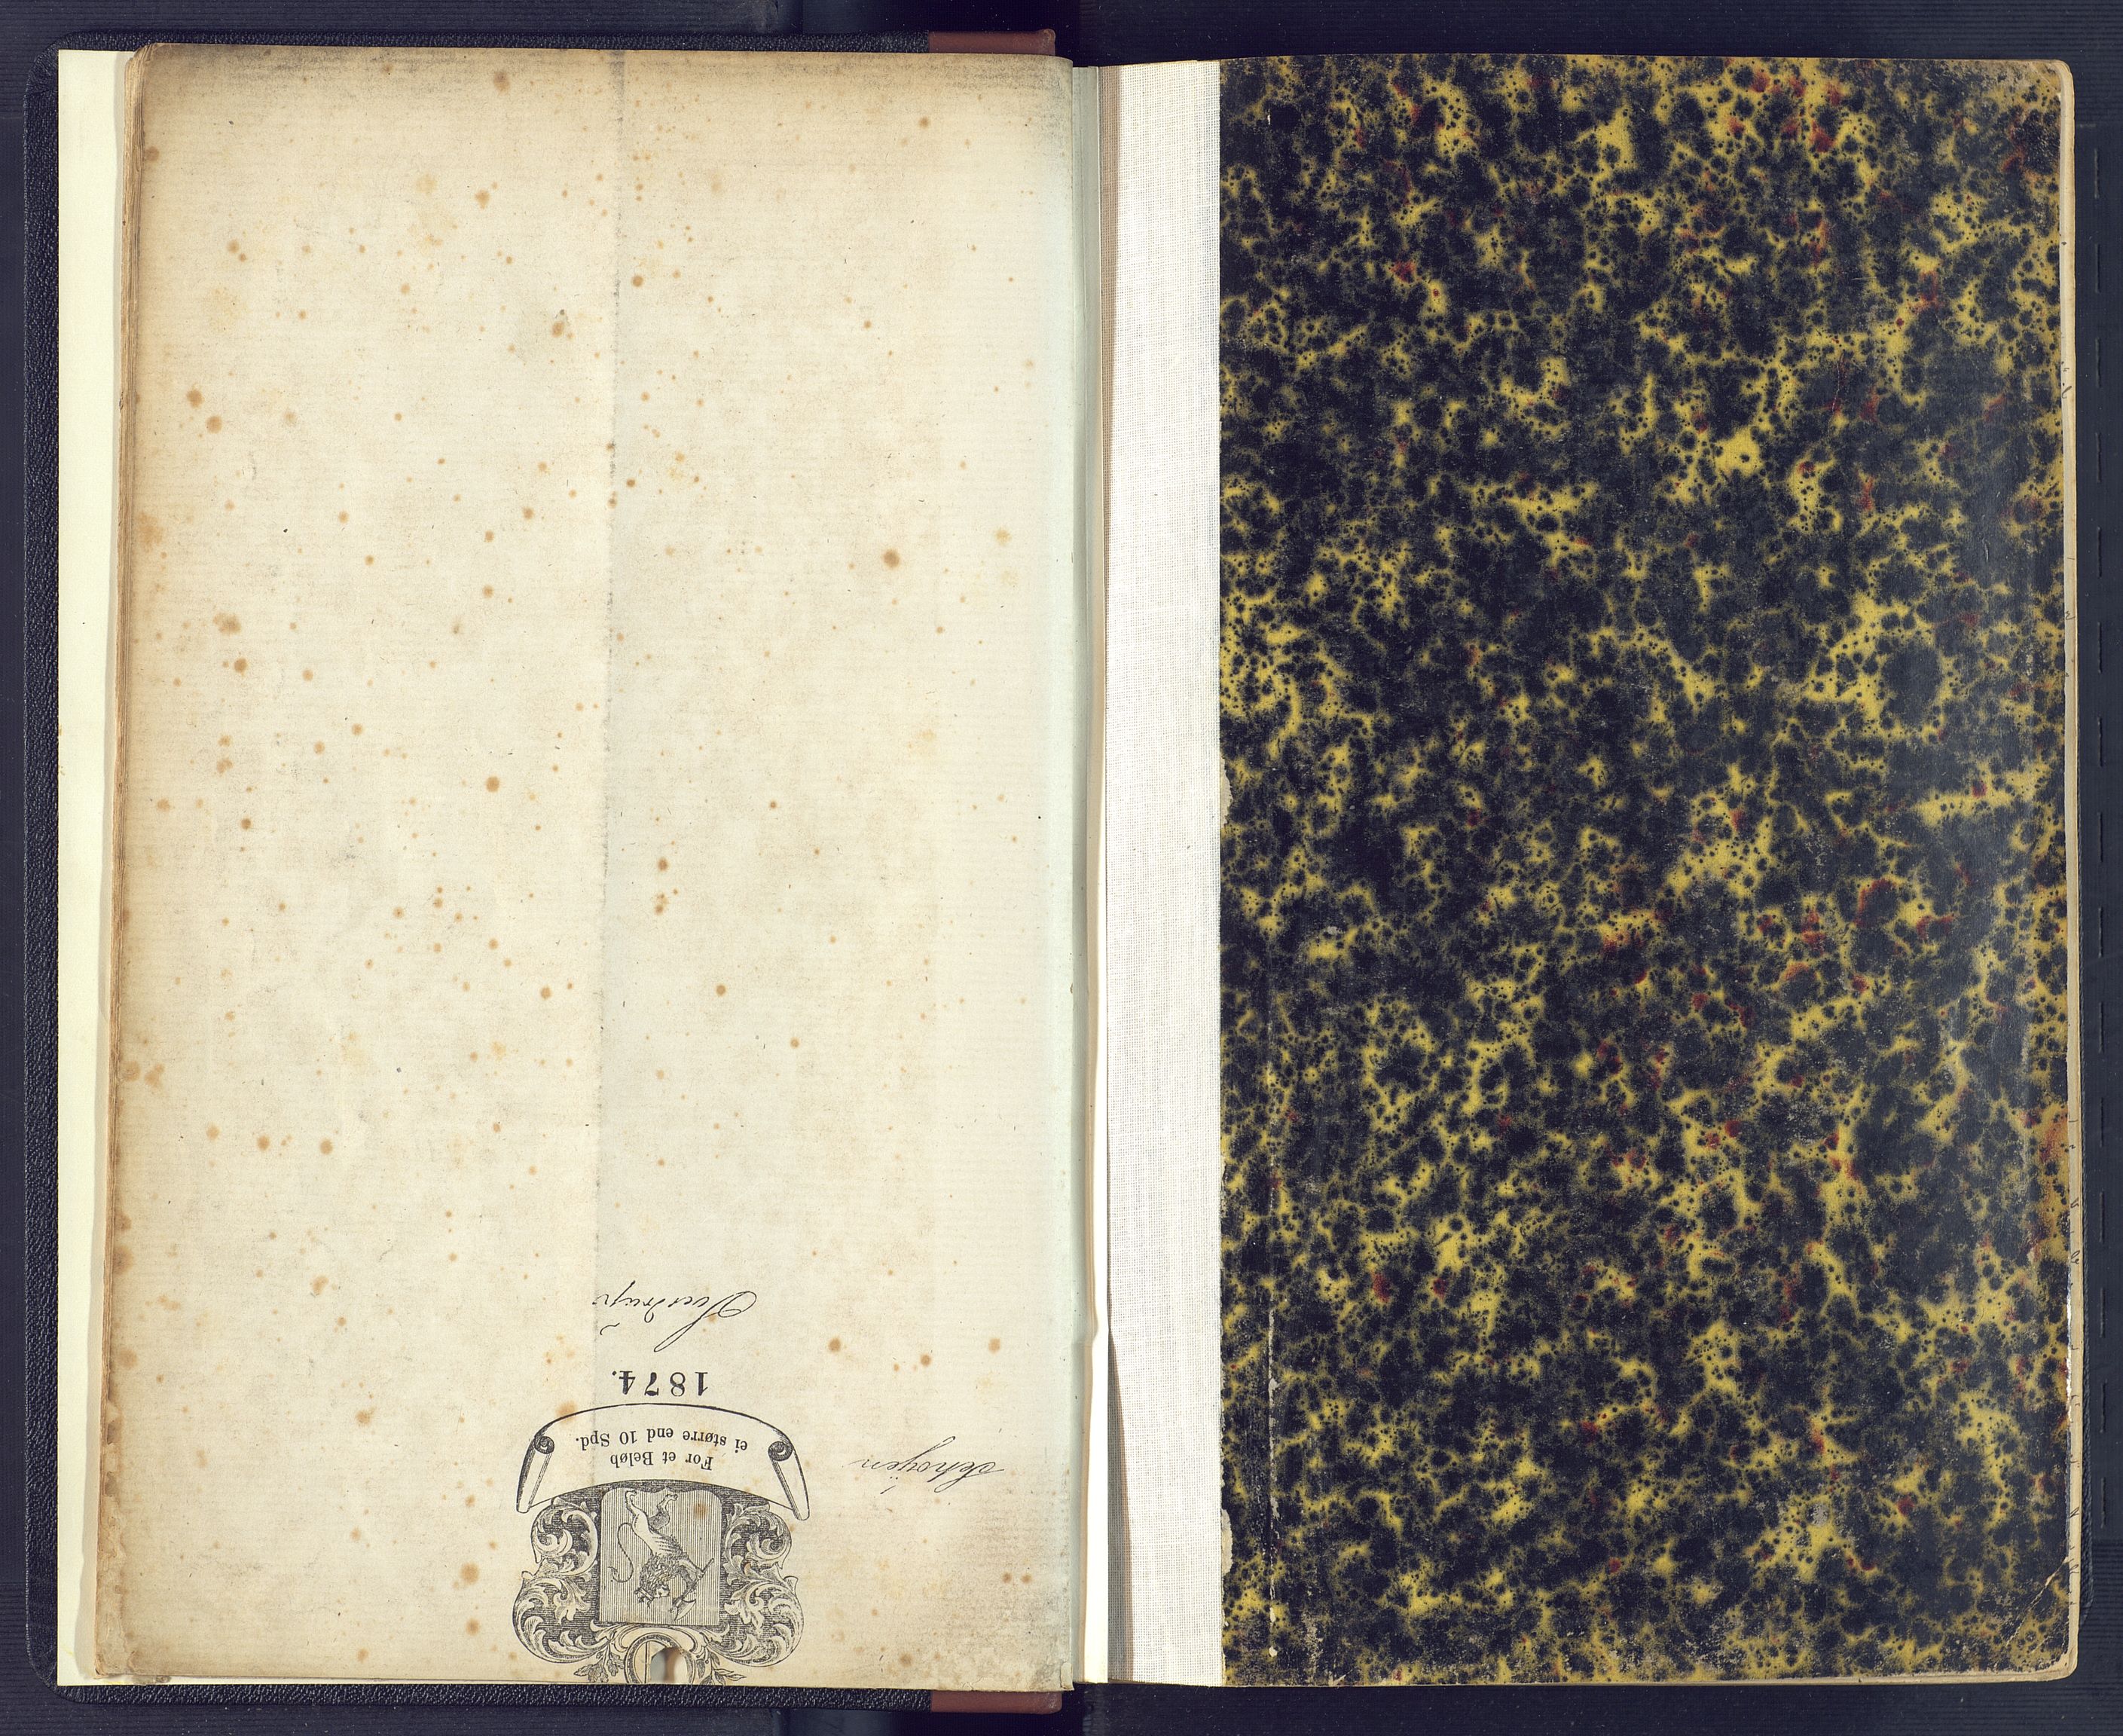 Torridal sorenskriveri, SAK/1221-0012/H/Hc/L0017: Skifteforhandlingsprotokoll med navneregister nr. 3, 1878-1890